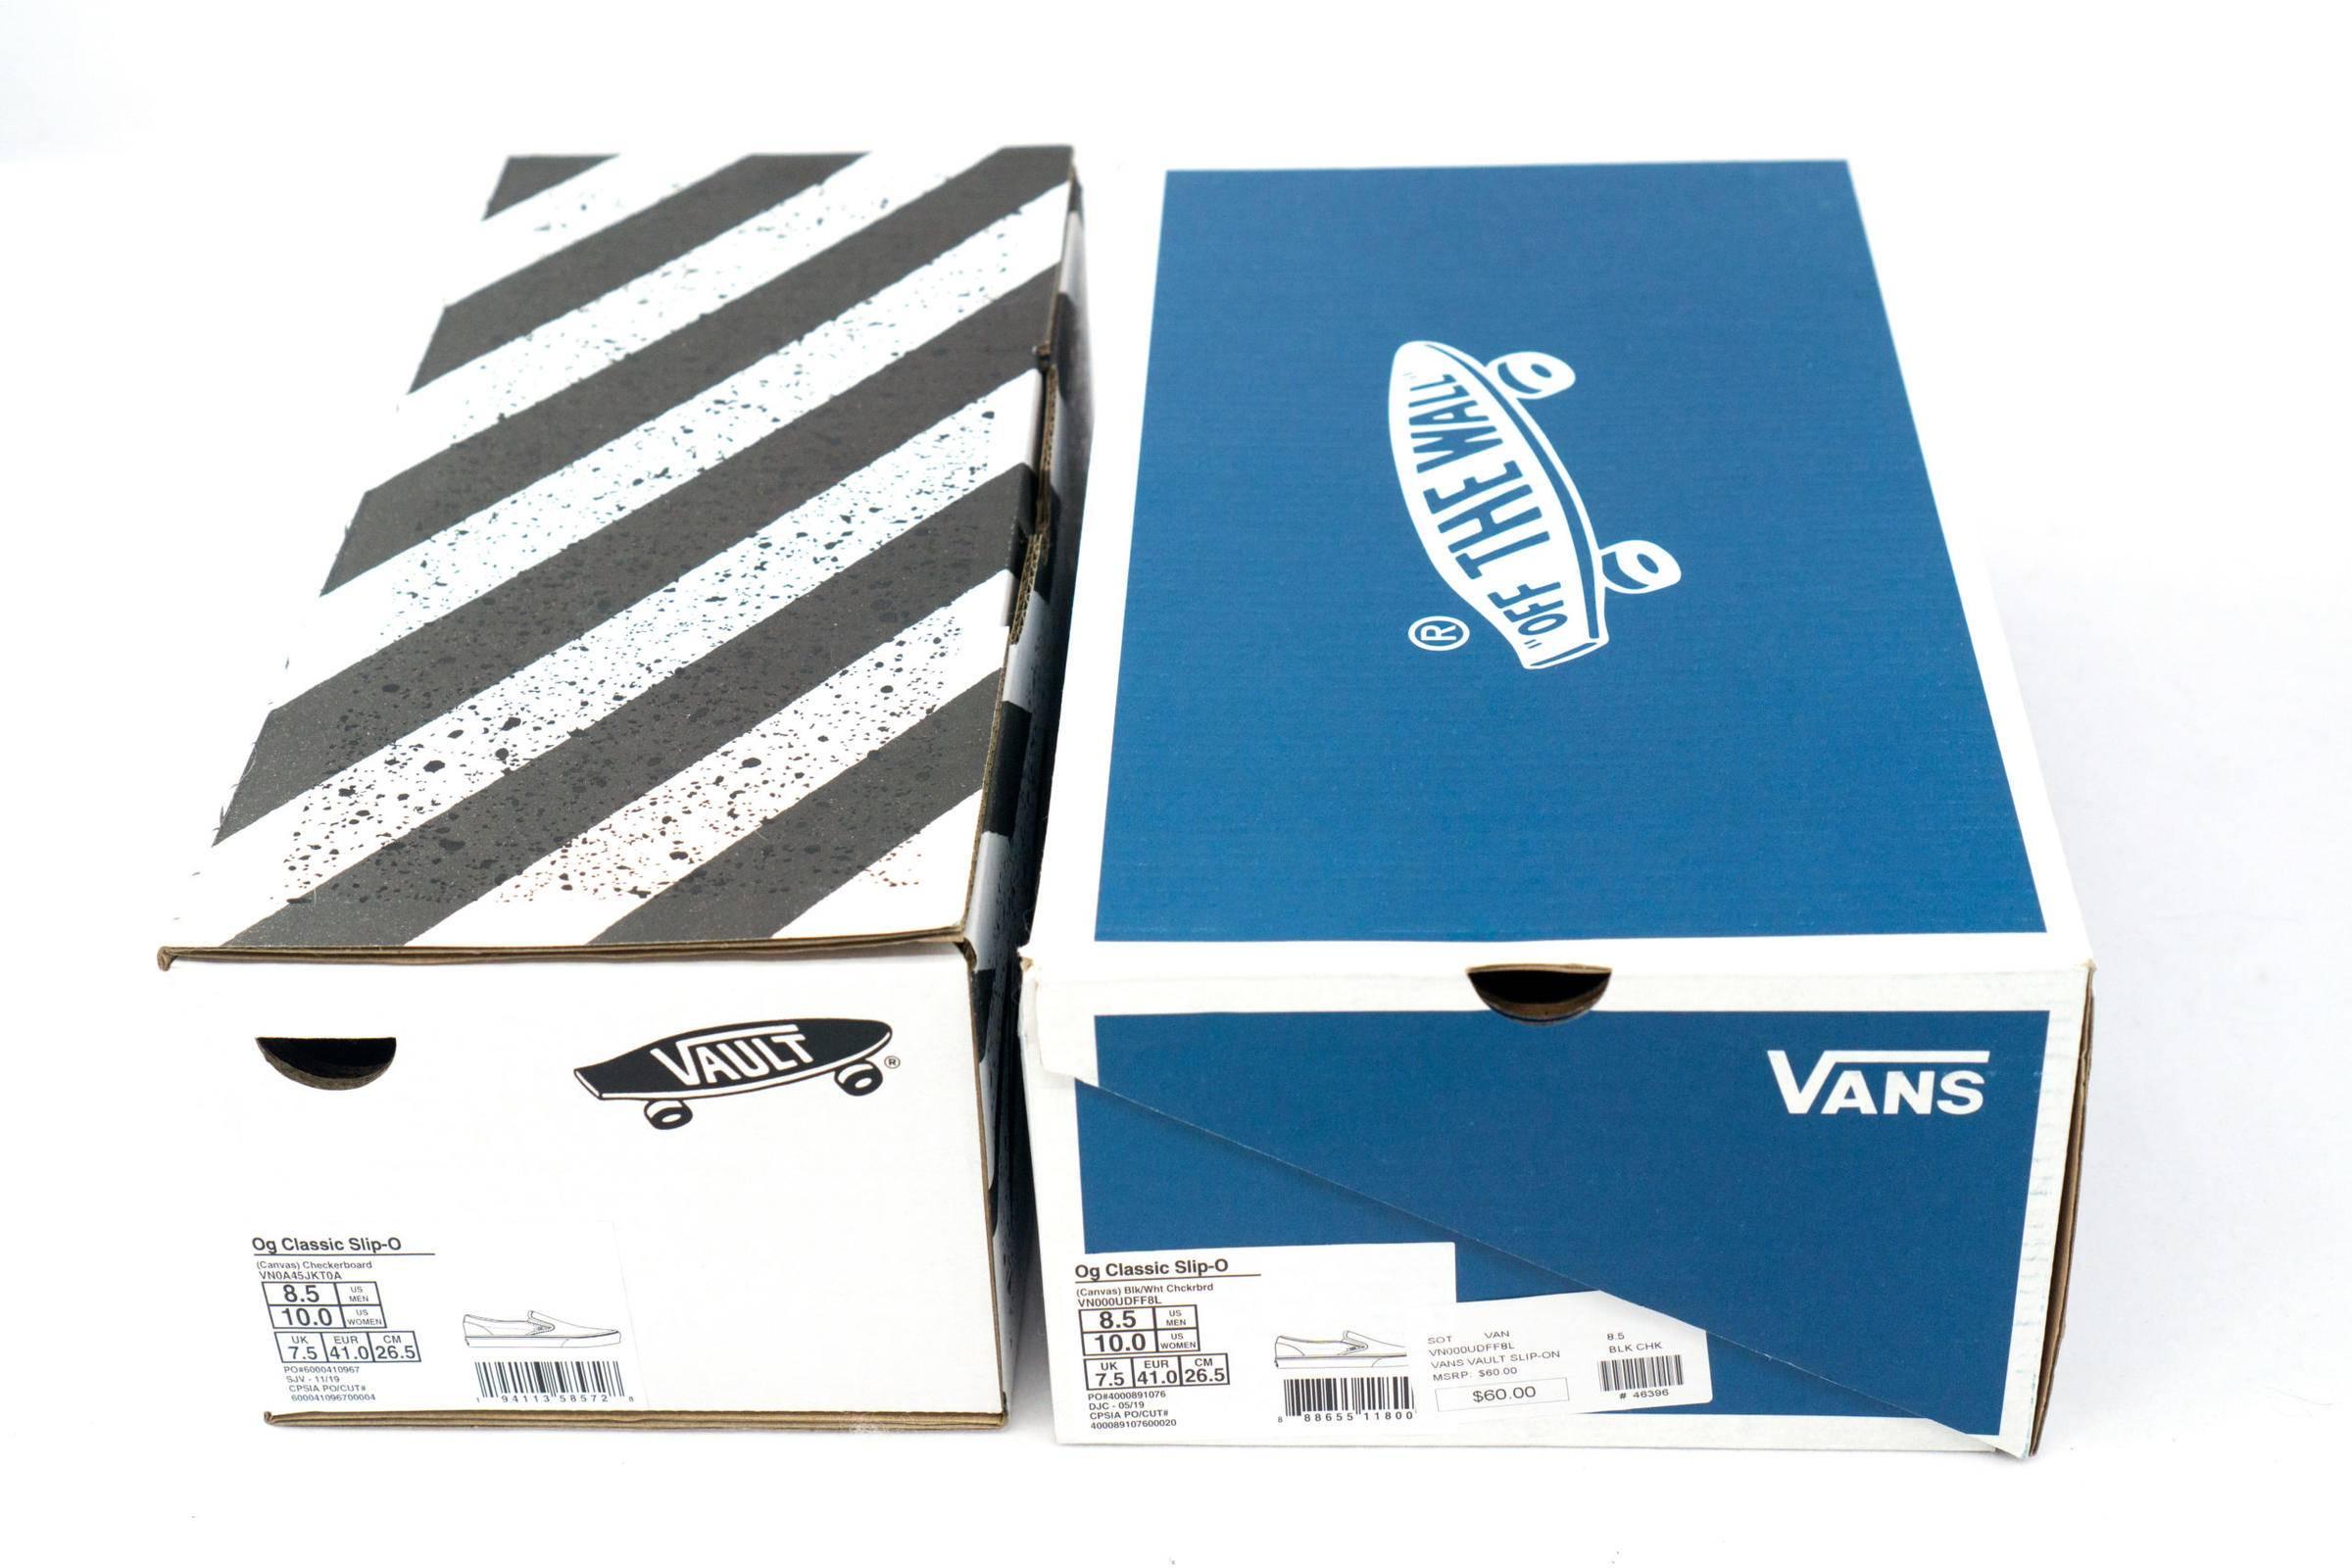 vans vault 以往并非联名的高端鞋款都会装在蓝白鞋盒之中,顶部有着 